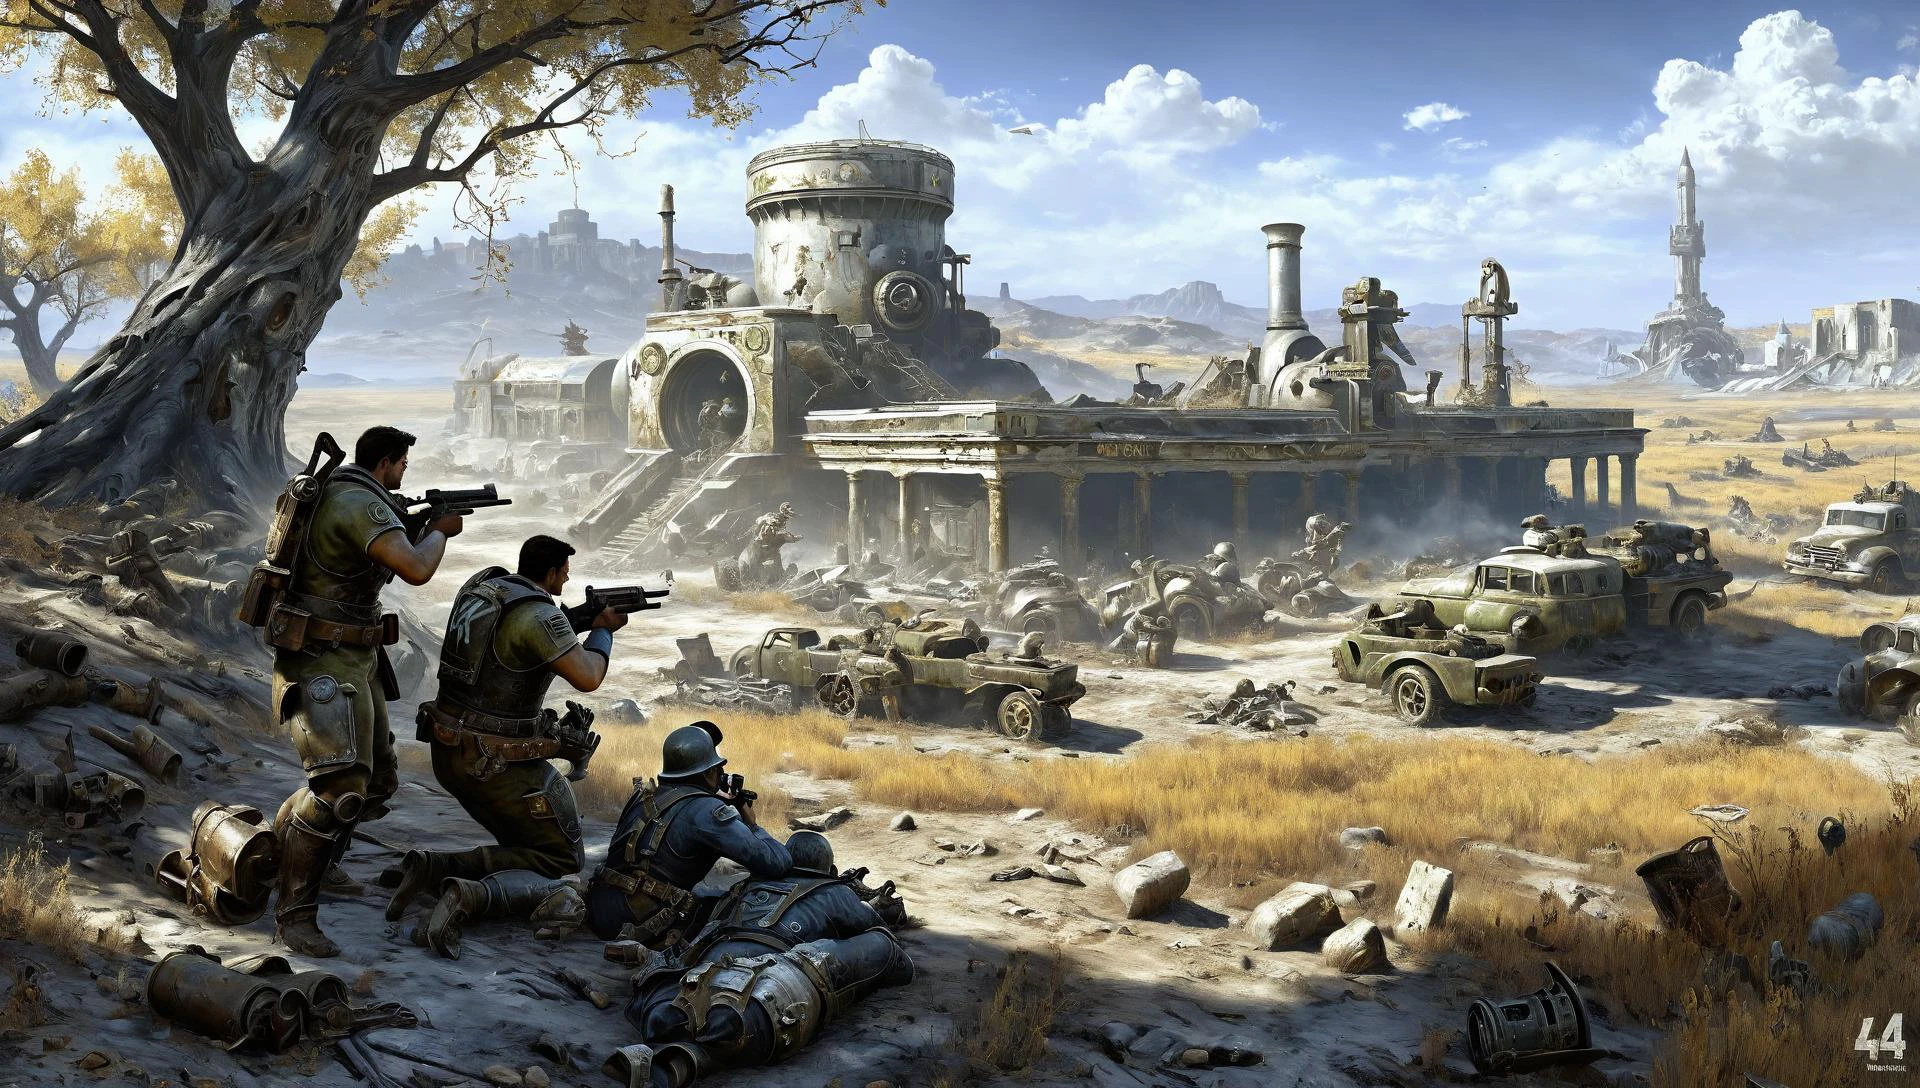 لوحة حرب Fallout4 مفصلة في أمريكا , أسلوب الأسطوري الأكاديمي القديم من قبل هنريك سيميرادزكي, 